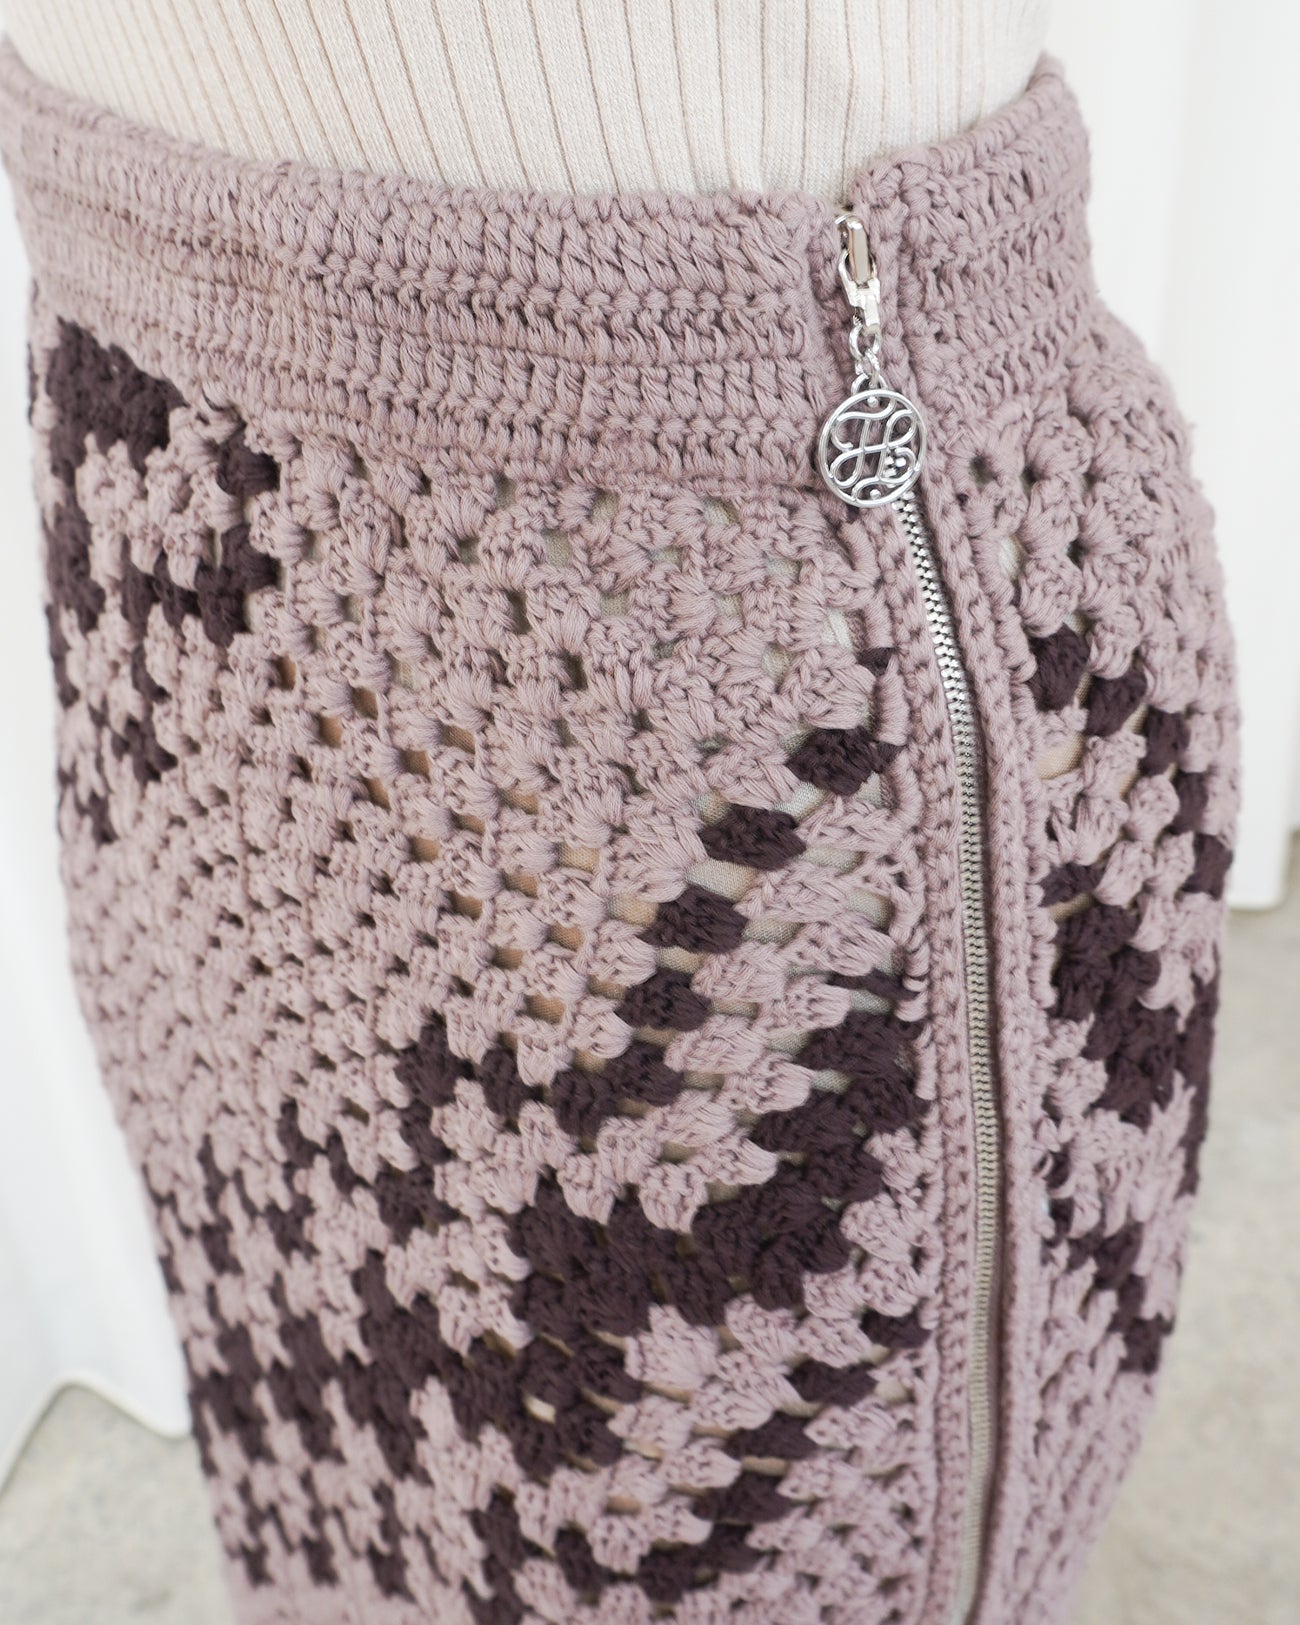 crochet knit skirt